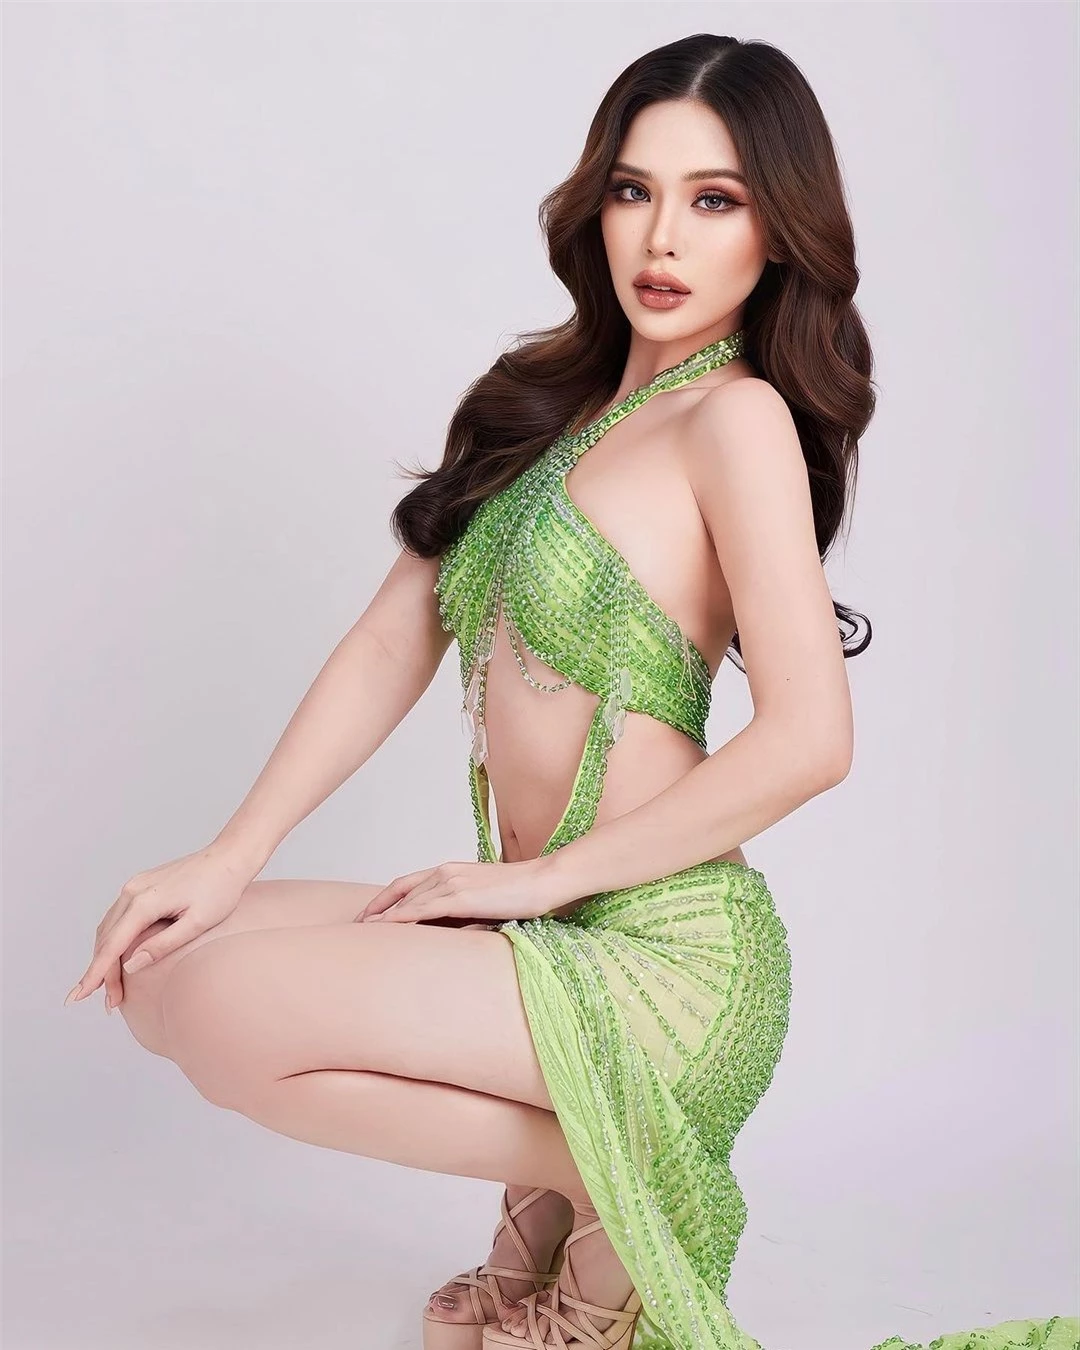 Nhan sắc nóng bỏng của người đẹp lai đăng quang Hoa hậu Hòa bình Phuket ảnh 9